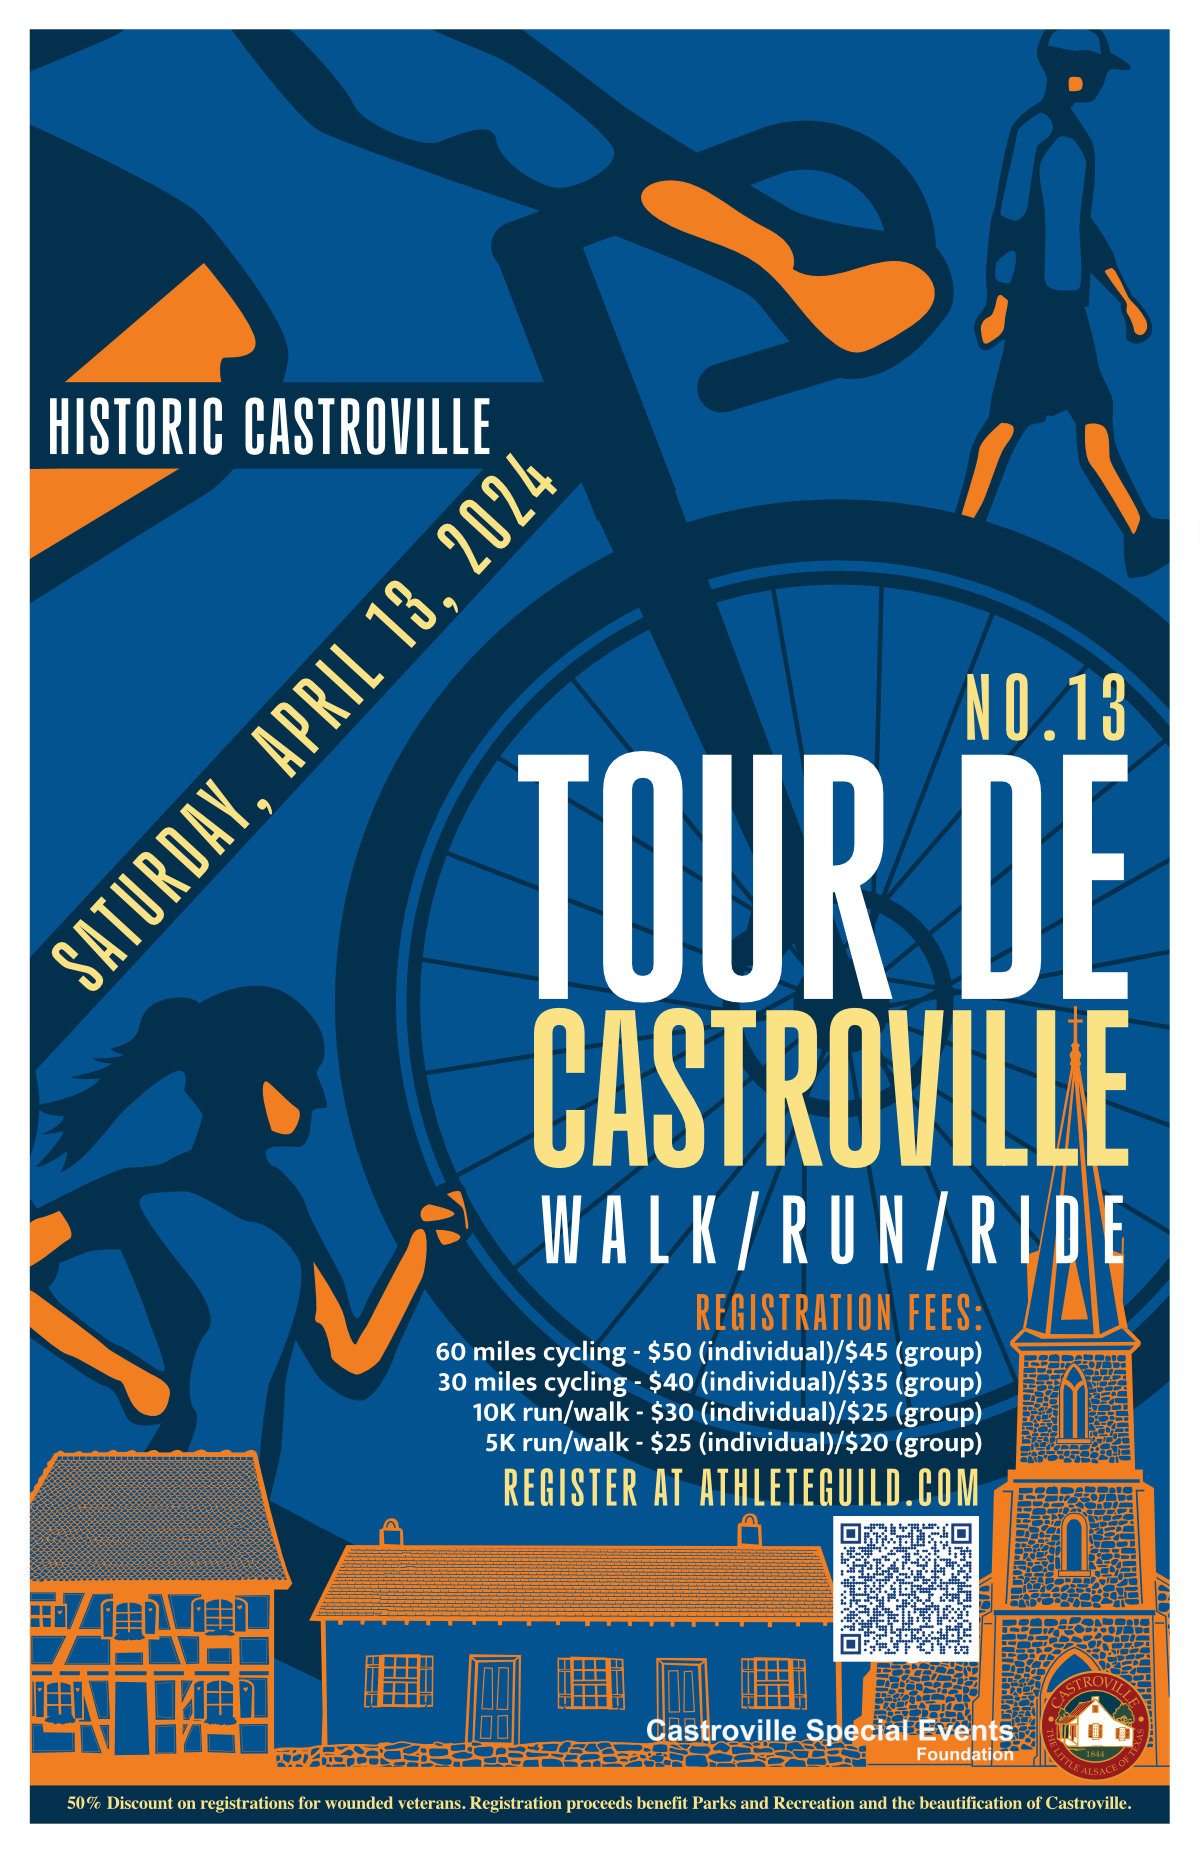 The Tour de Castroville